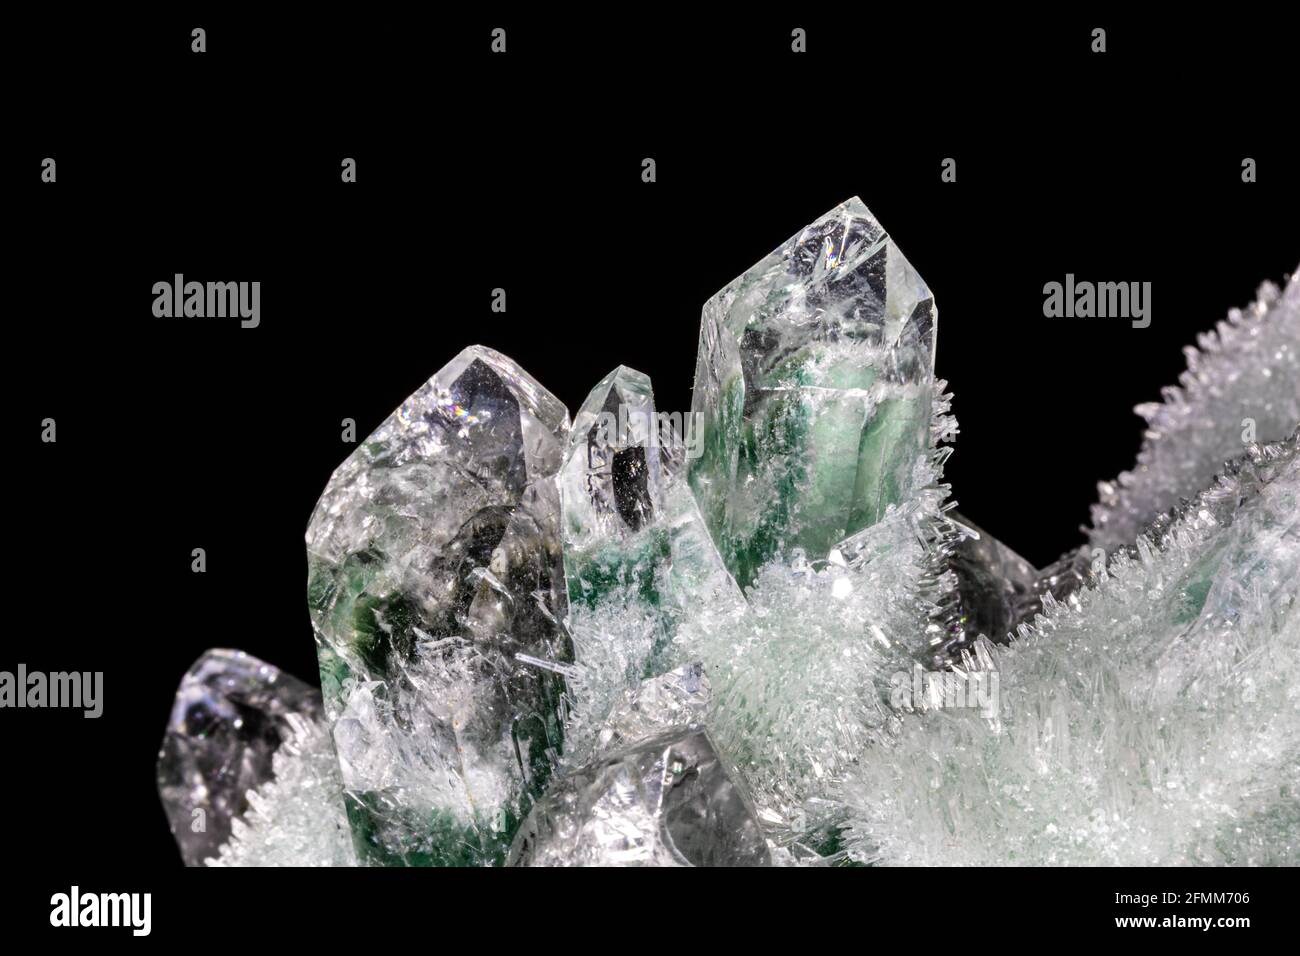 Cristaux de quartz chlorés de l'Himalaya. Les cristaux principaux de couleur verte et blanche sont entourés de plus petits cristaux. Banque D'Images